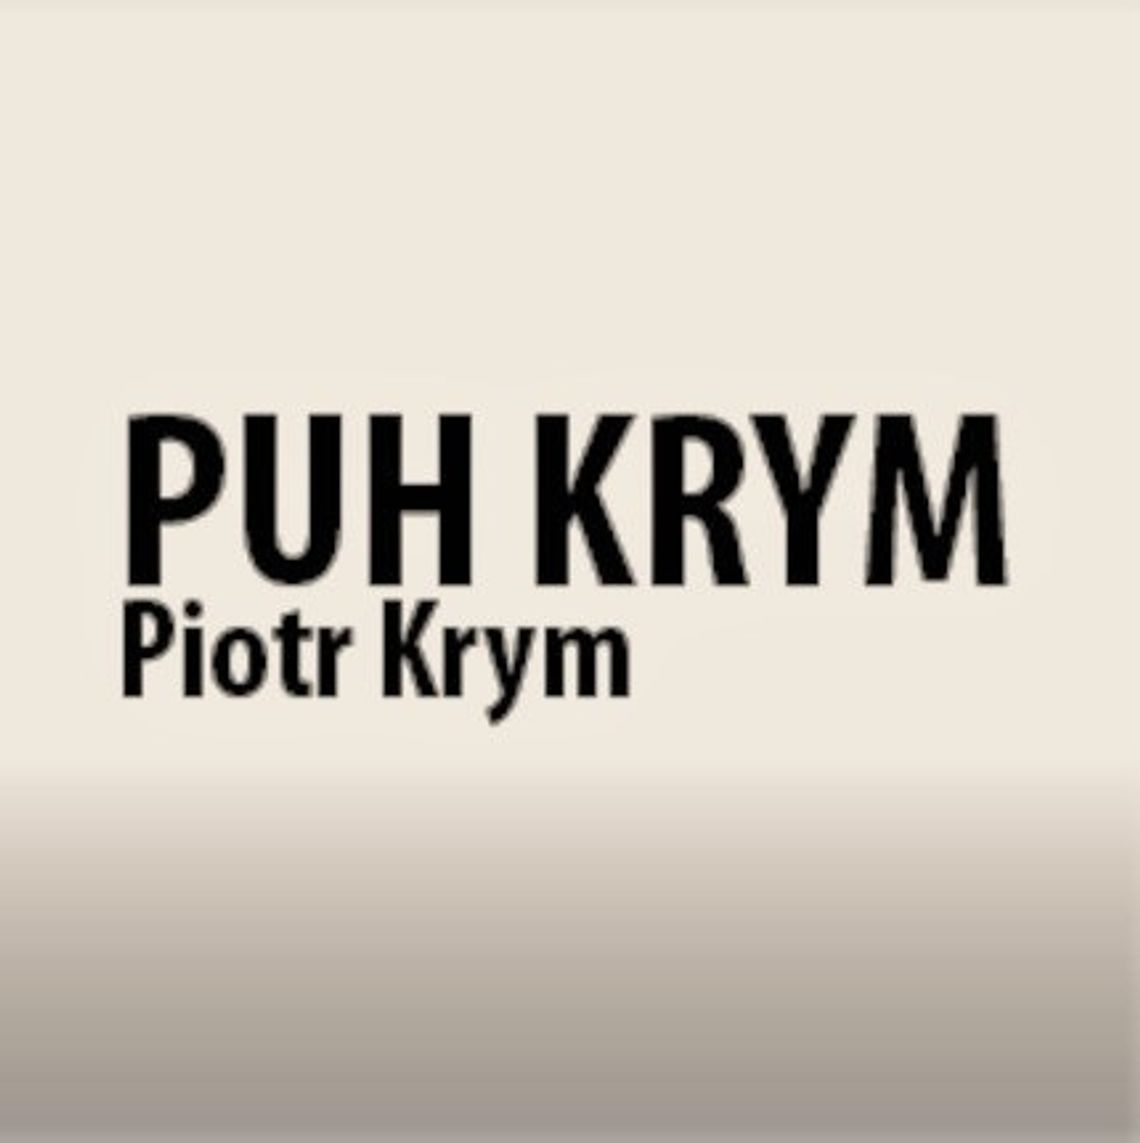 PUH Krym Piotr Krym